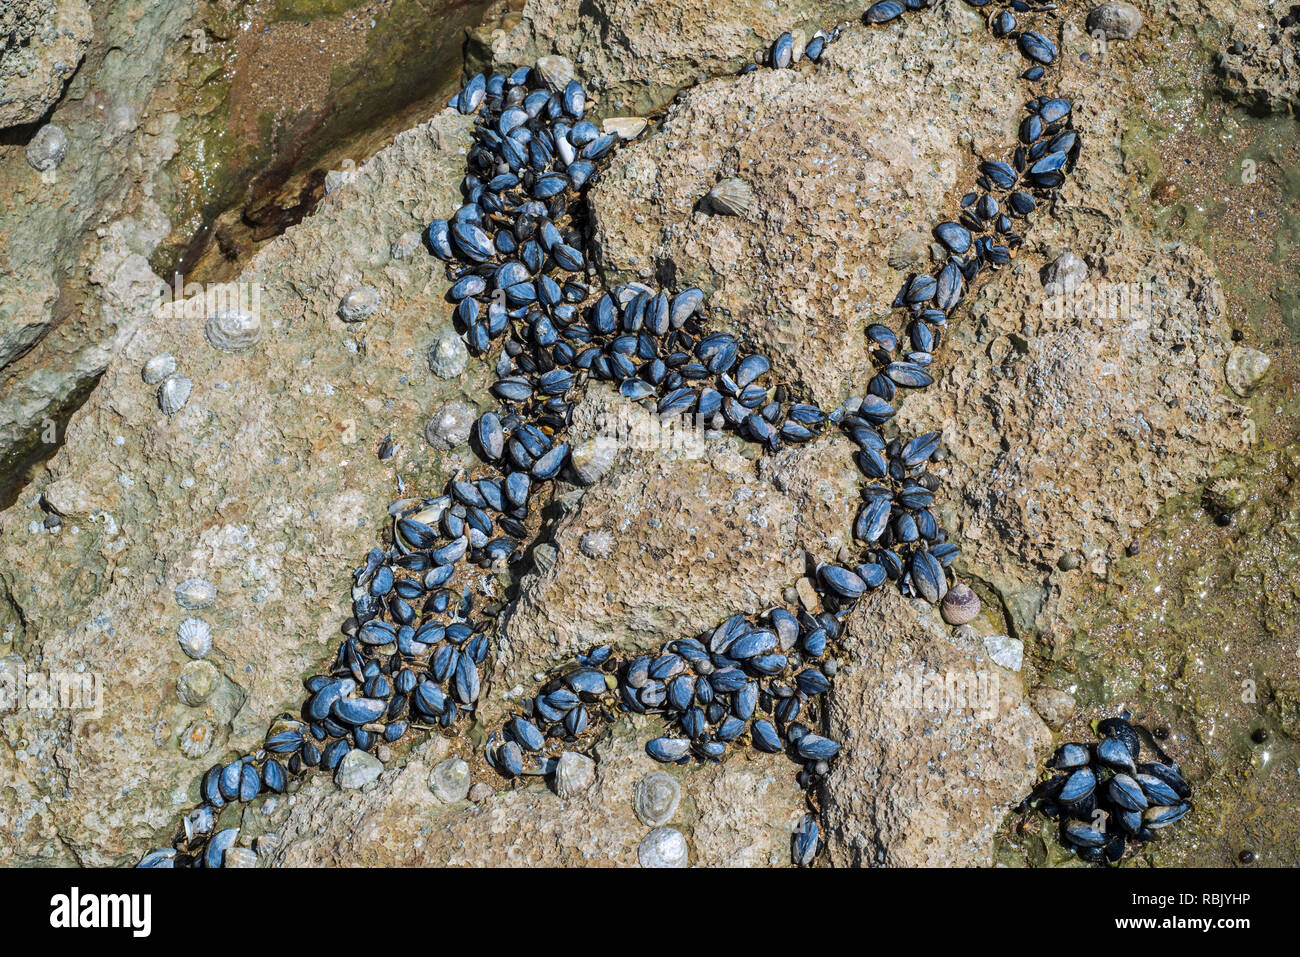 Live Miesmuscheln/gemeinsame Miesmuscheln (Mytilus edulis) mussel Bett und gemeinsamen Kletten (Patella Vulgata) auf Felsen am Strand bei Ebbe ausgesetzt Stockfoto